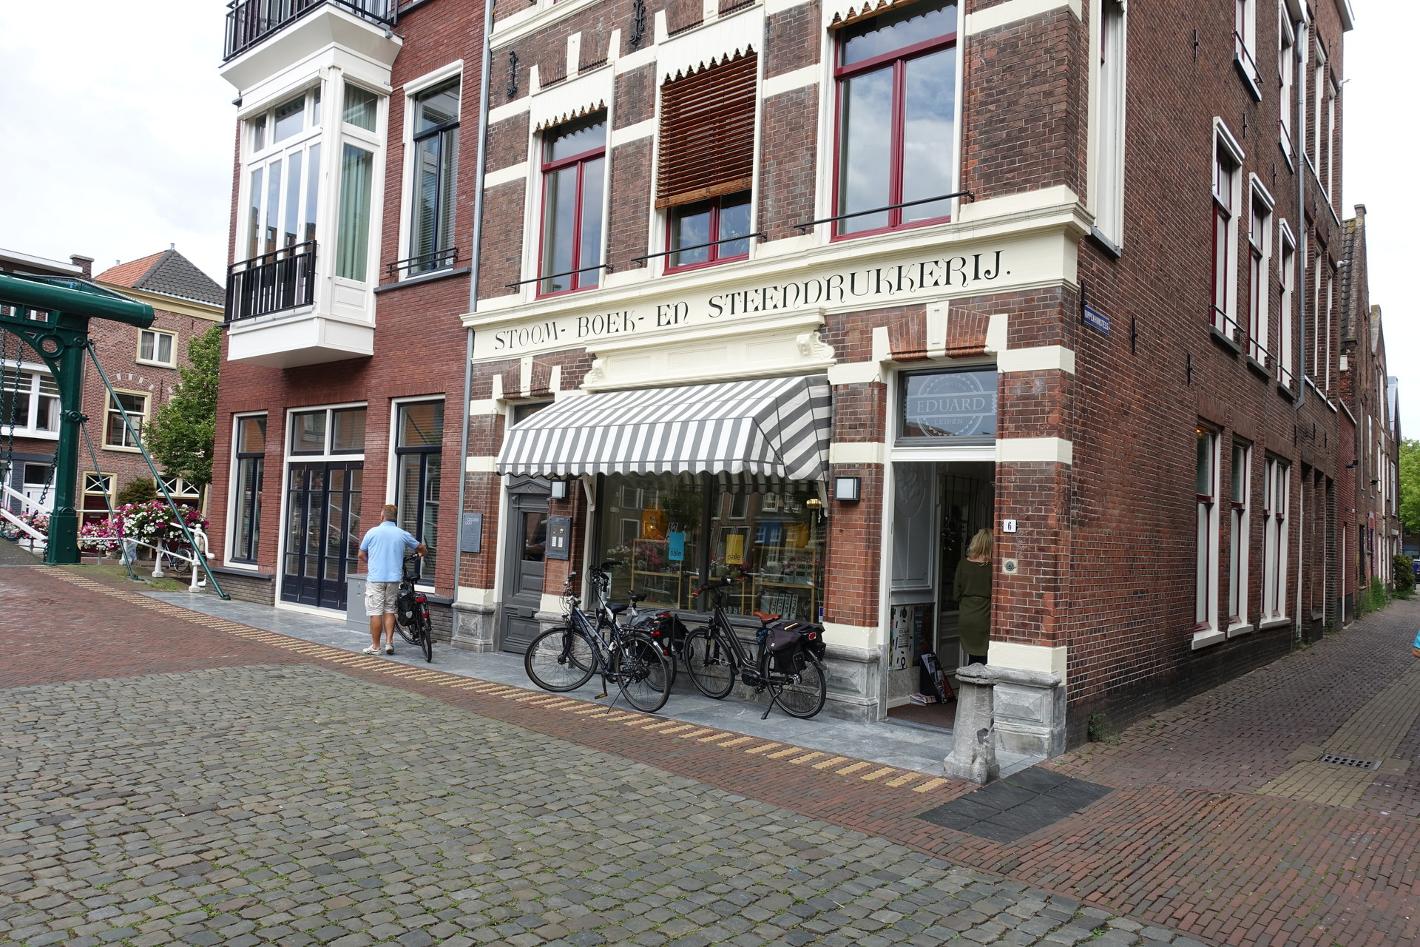 Foto EDUARD Leiden in Leiden, Winkelen, Mode & kleding, Wonen & koken - #3